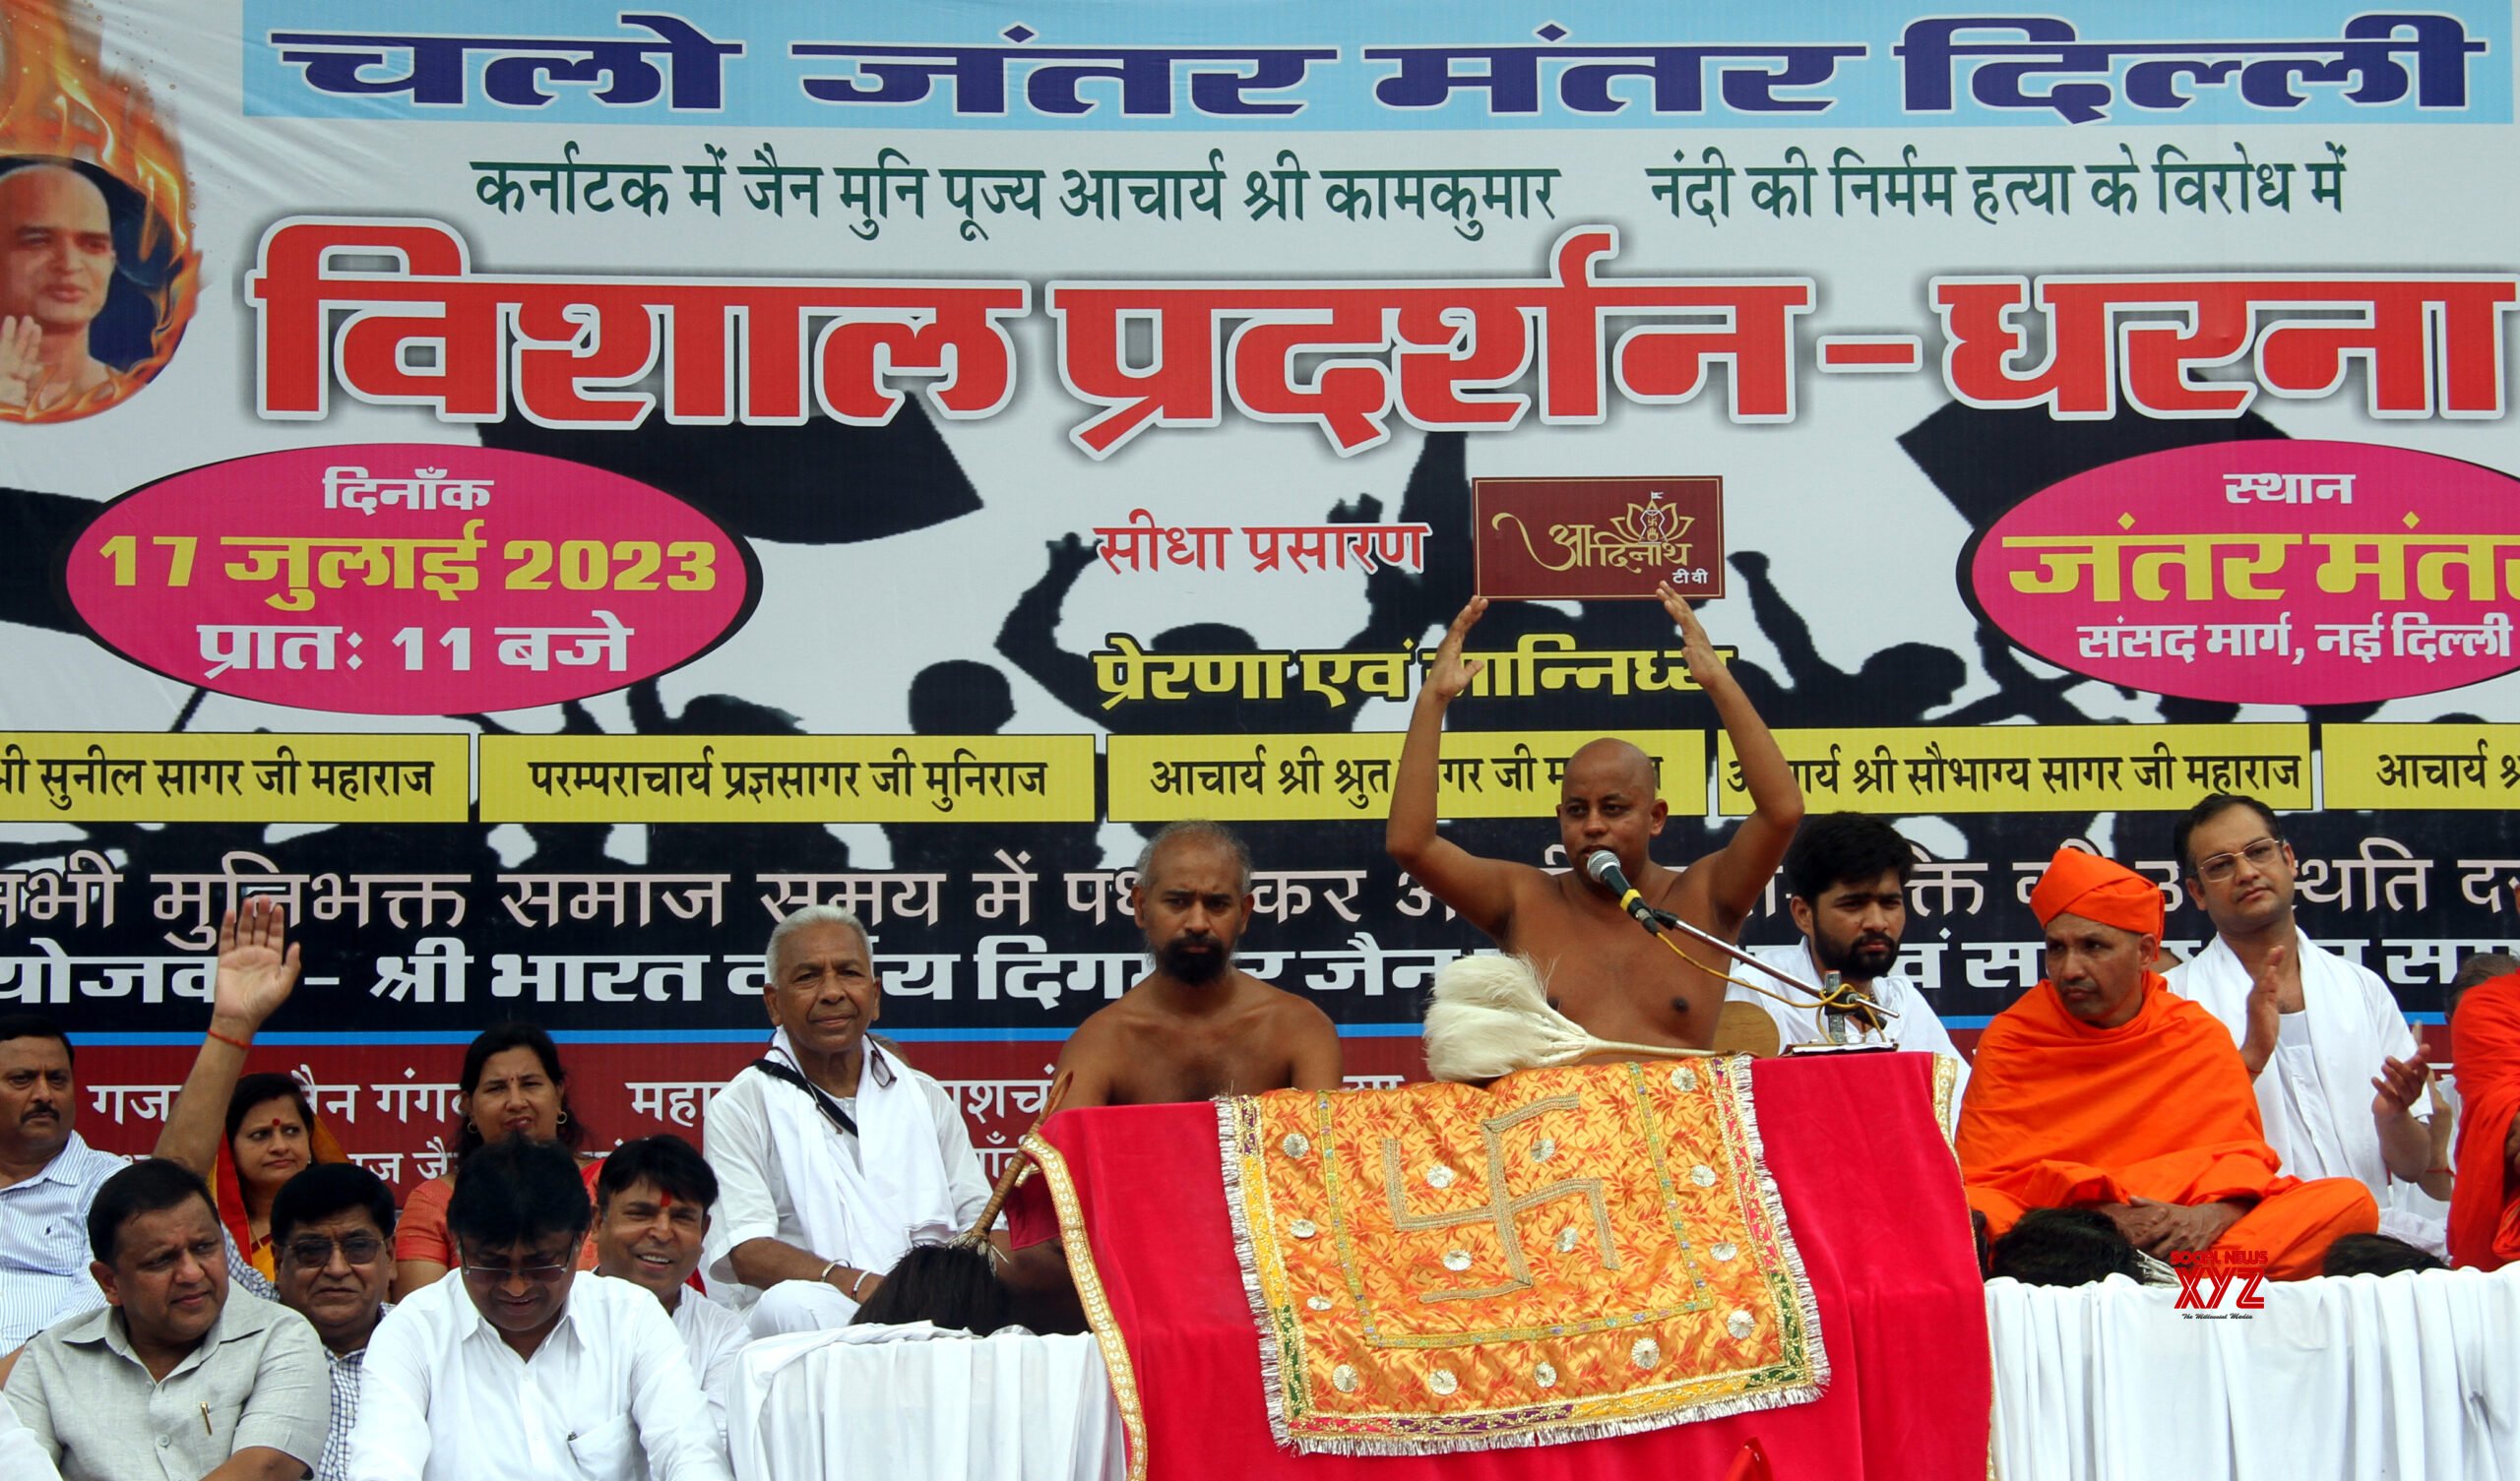 Jain Community Protests at Delhi's Jantar Mantar, Demands CBI Investigation into Monk's Gruesome Murder in Karnataka